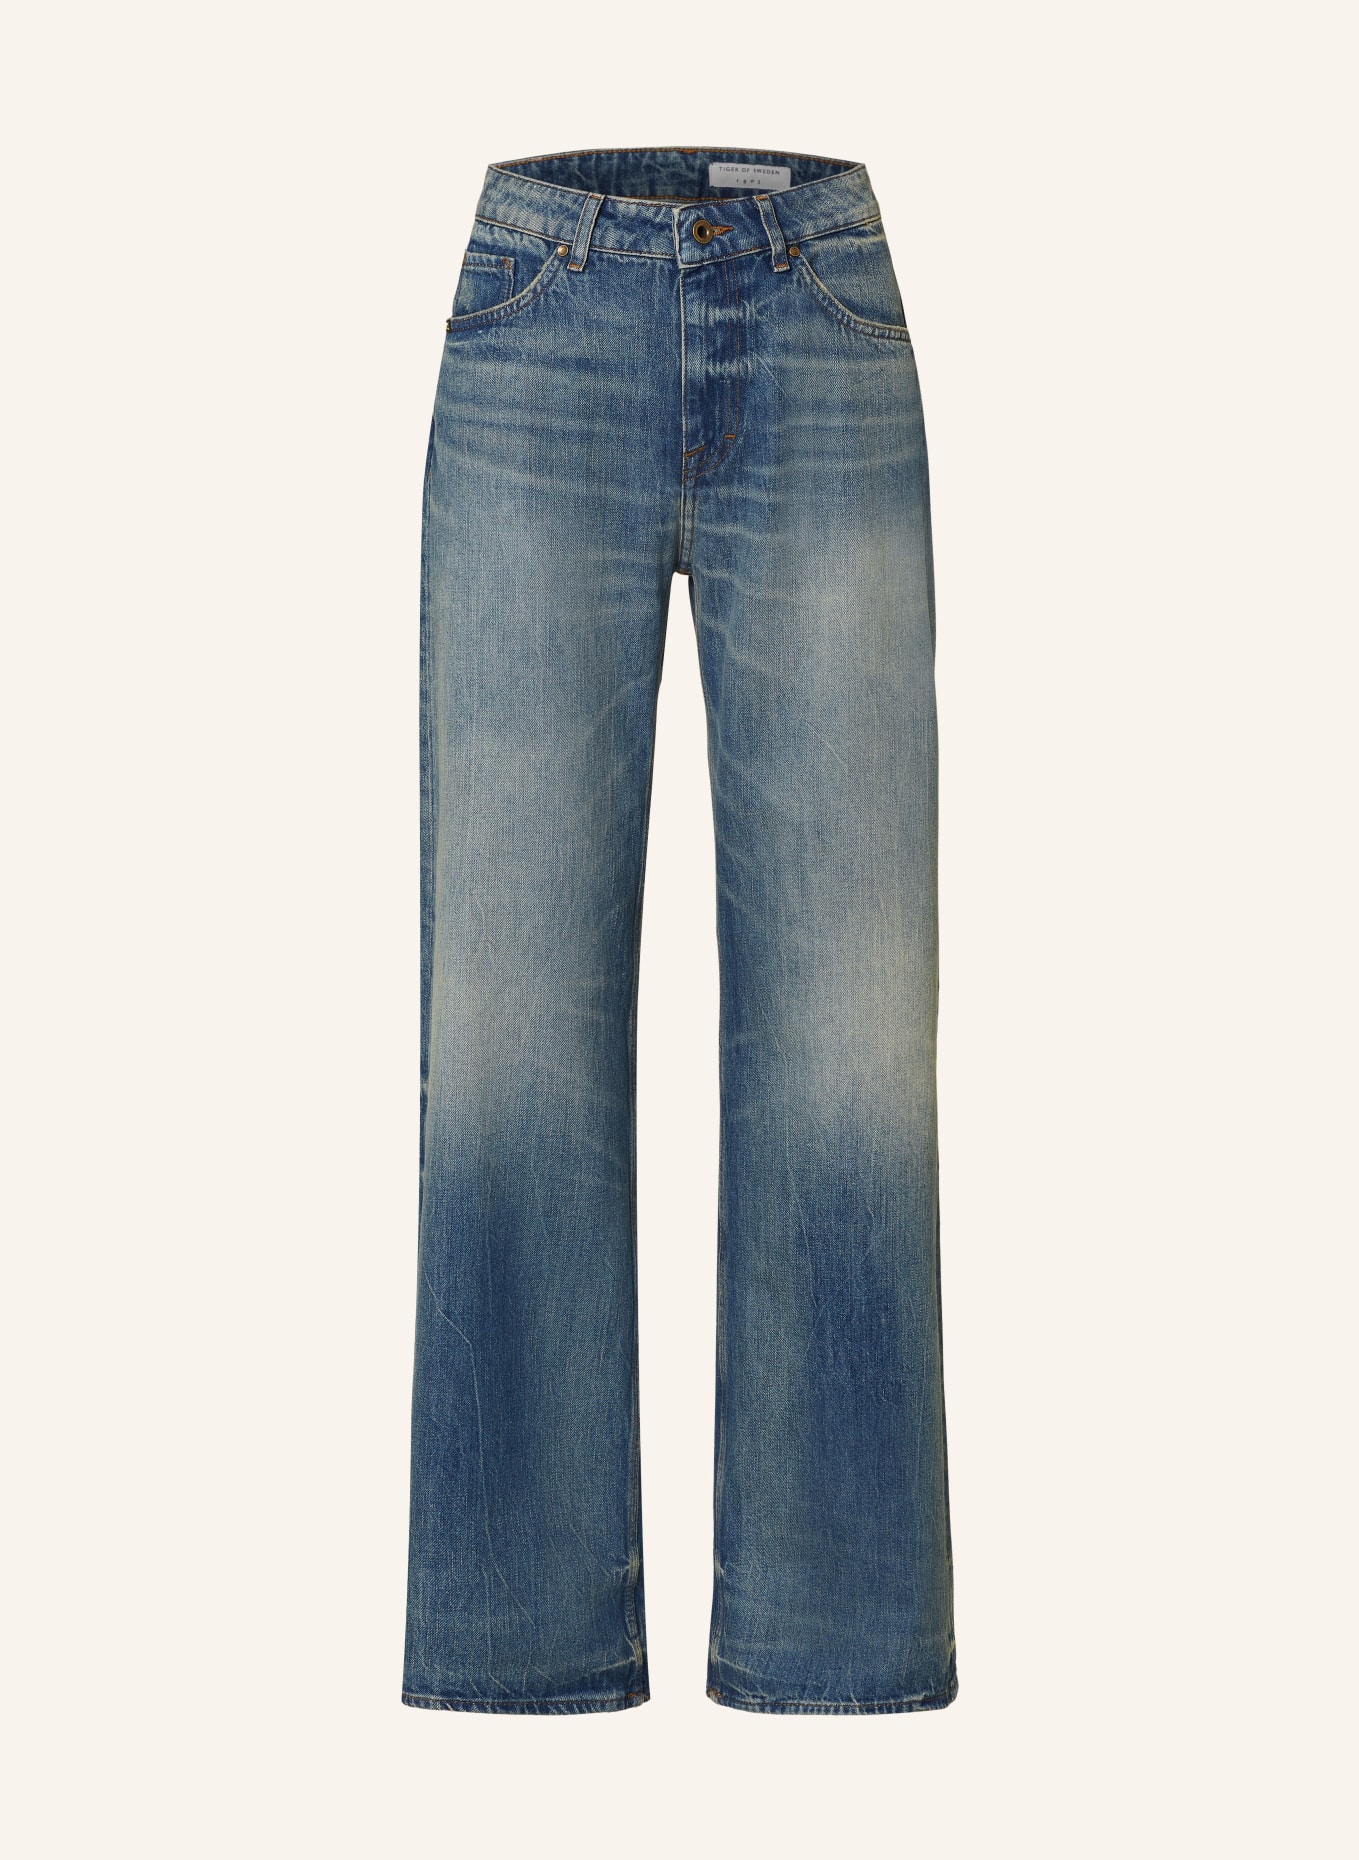 TIGER OF SWEDEN Jeans LOORNA, Color: 21F MEDIUM BLUE (Image 1)